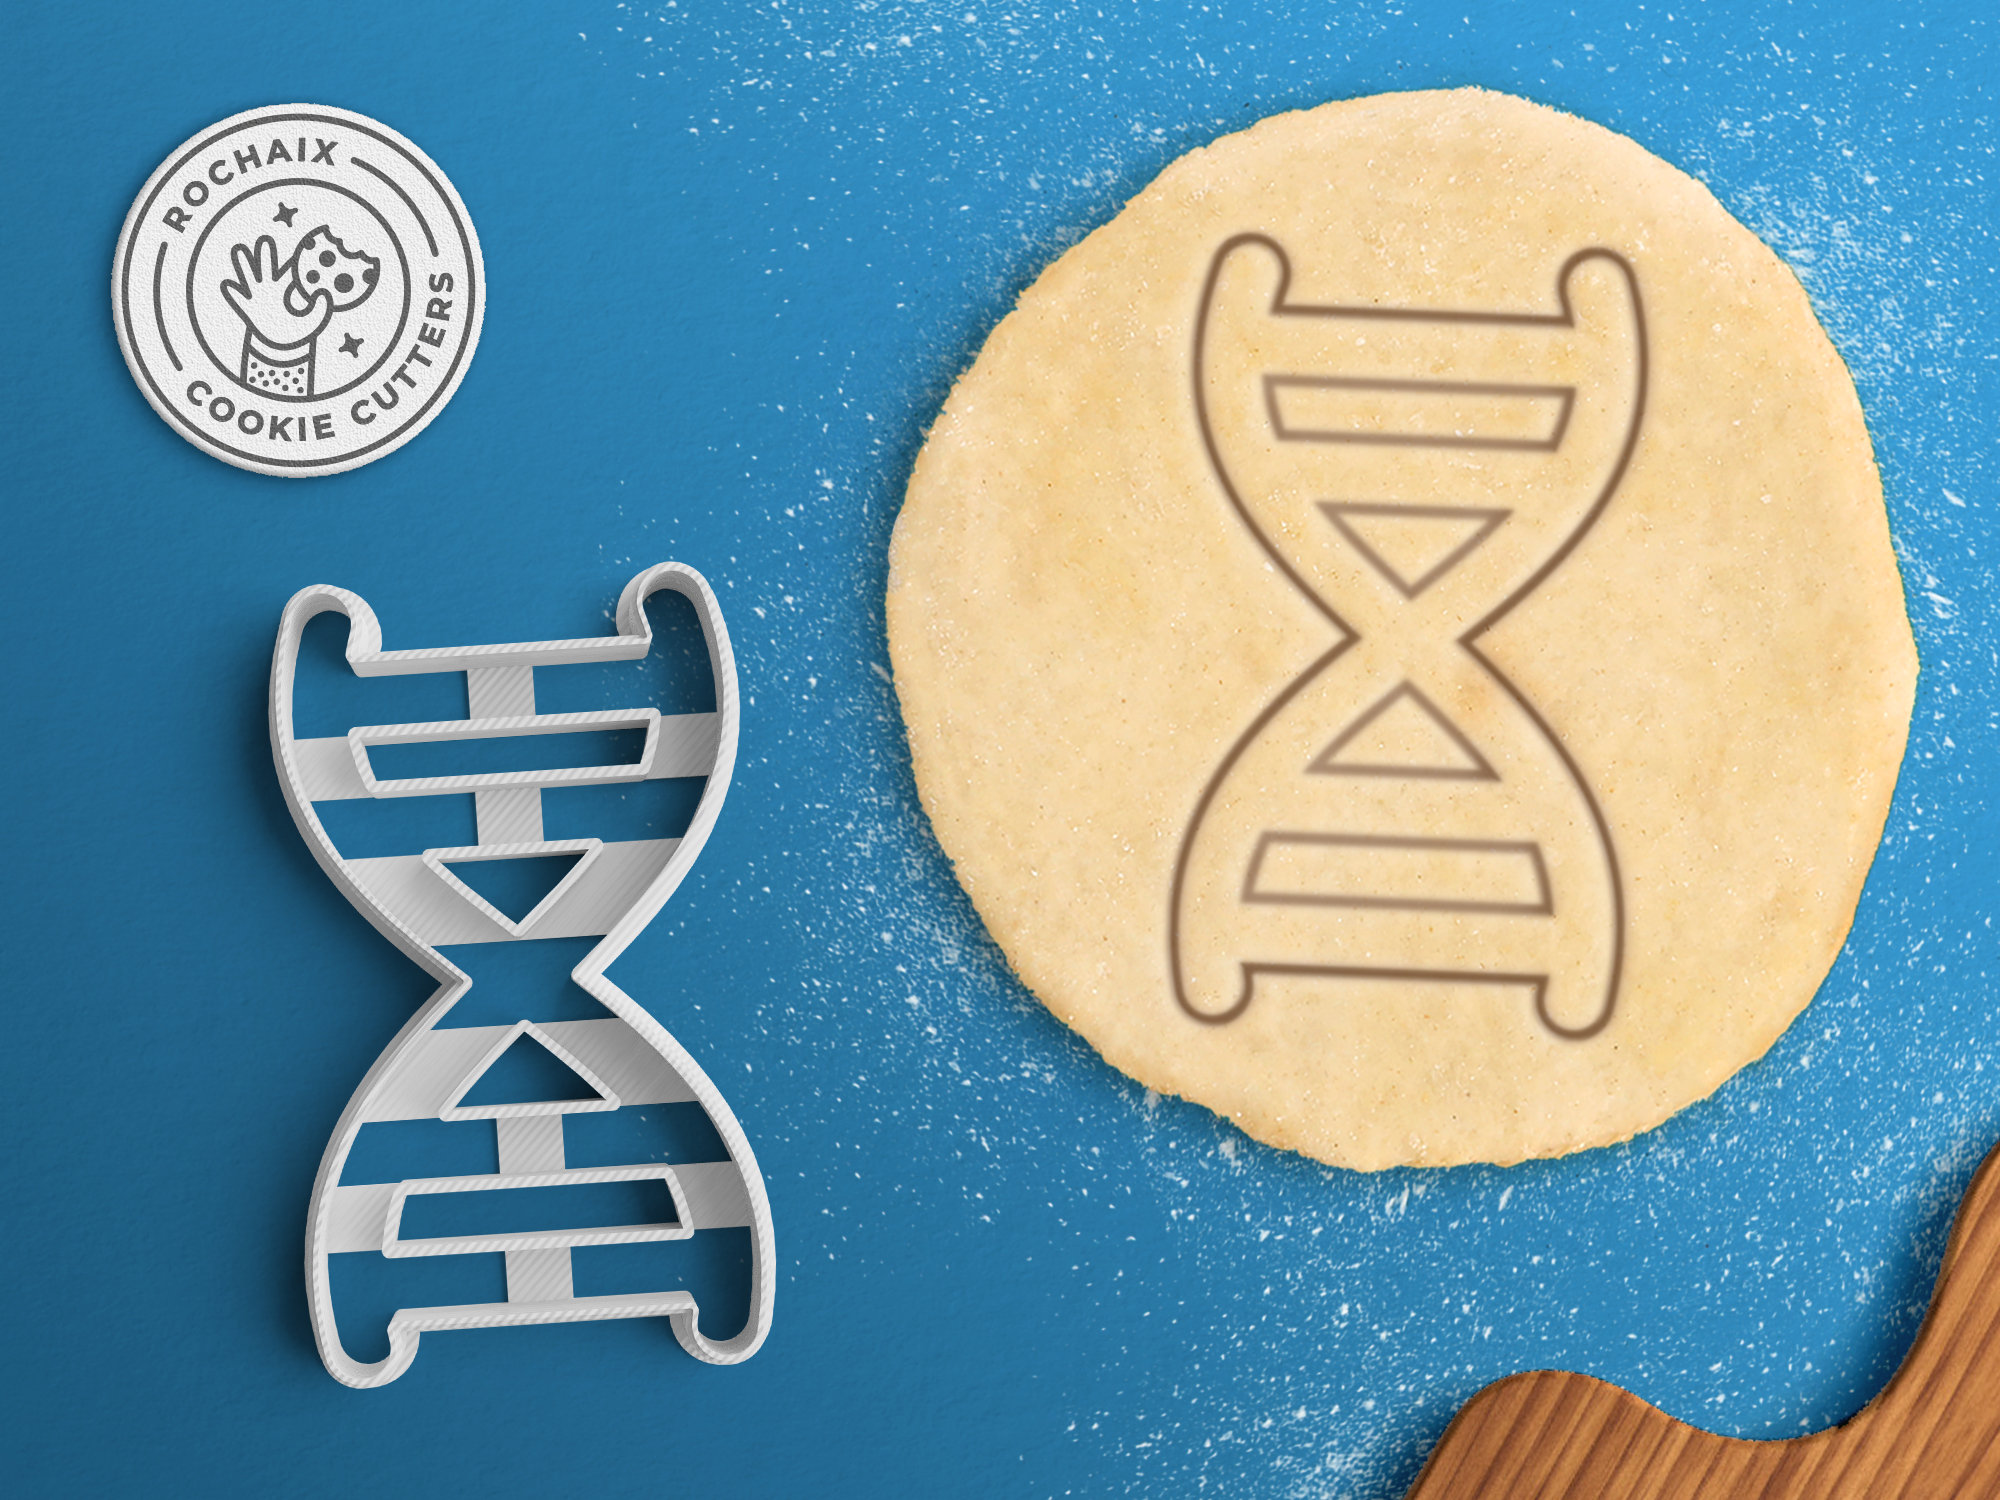 DNA Cookie Cutter Fun Science Scientist Geek Baking Gift.